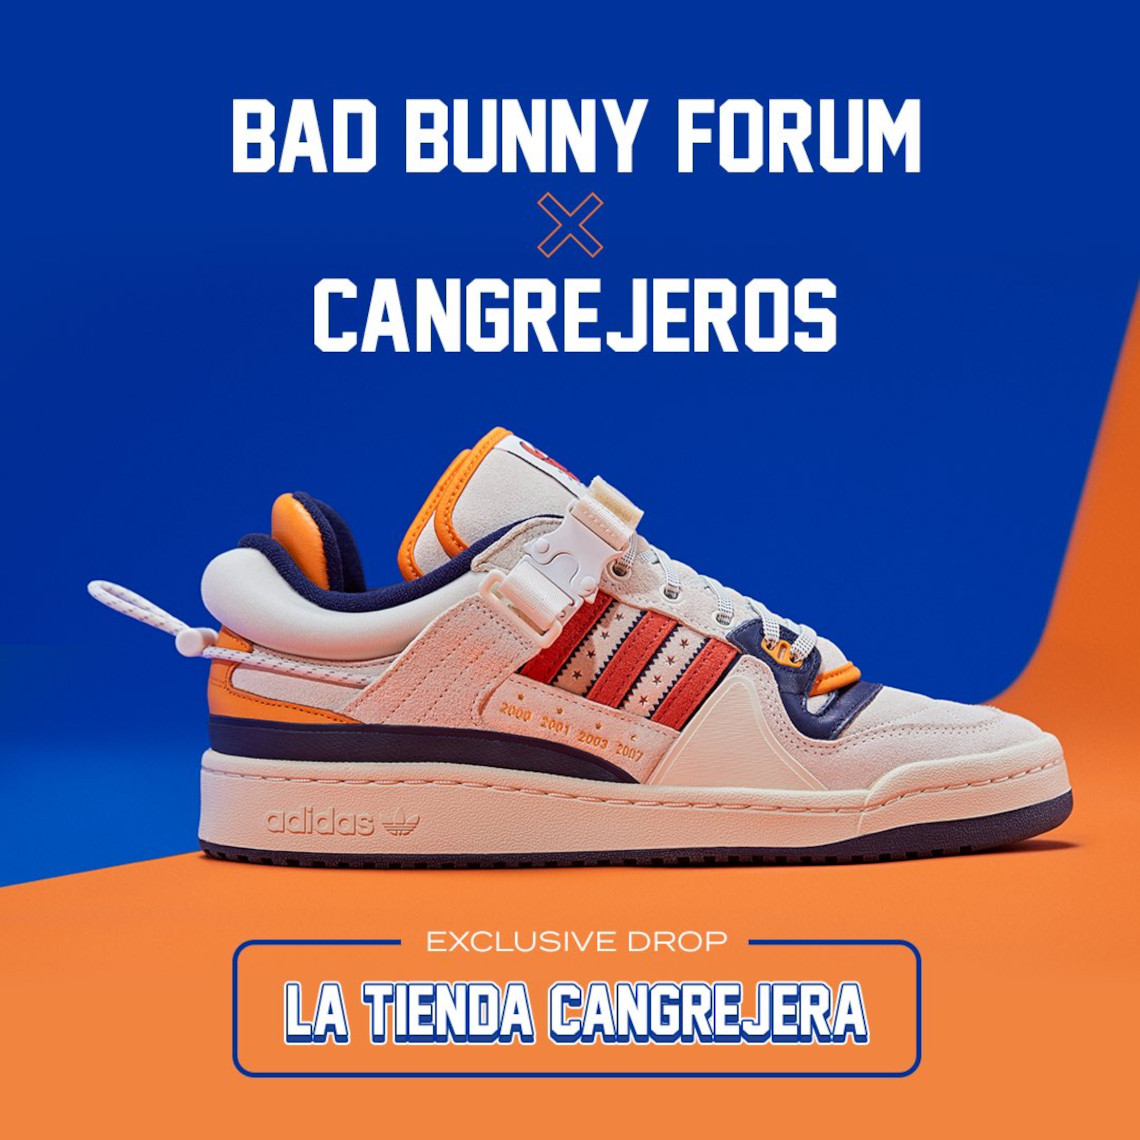 Bad Bunny Global 🐰 en X: Bad Bunny's basketball team will play